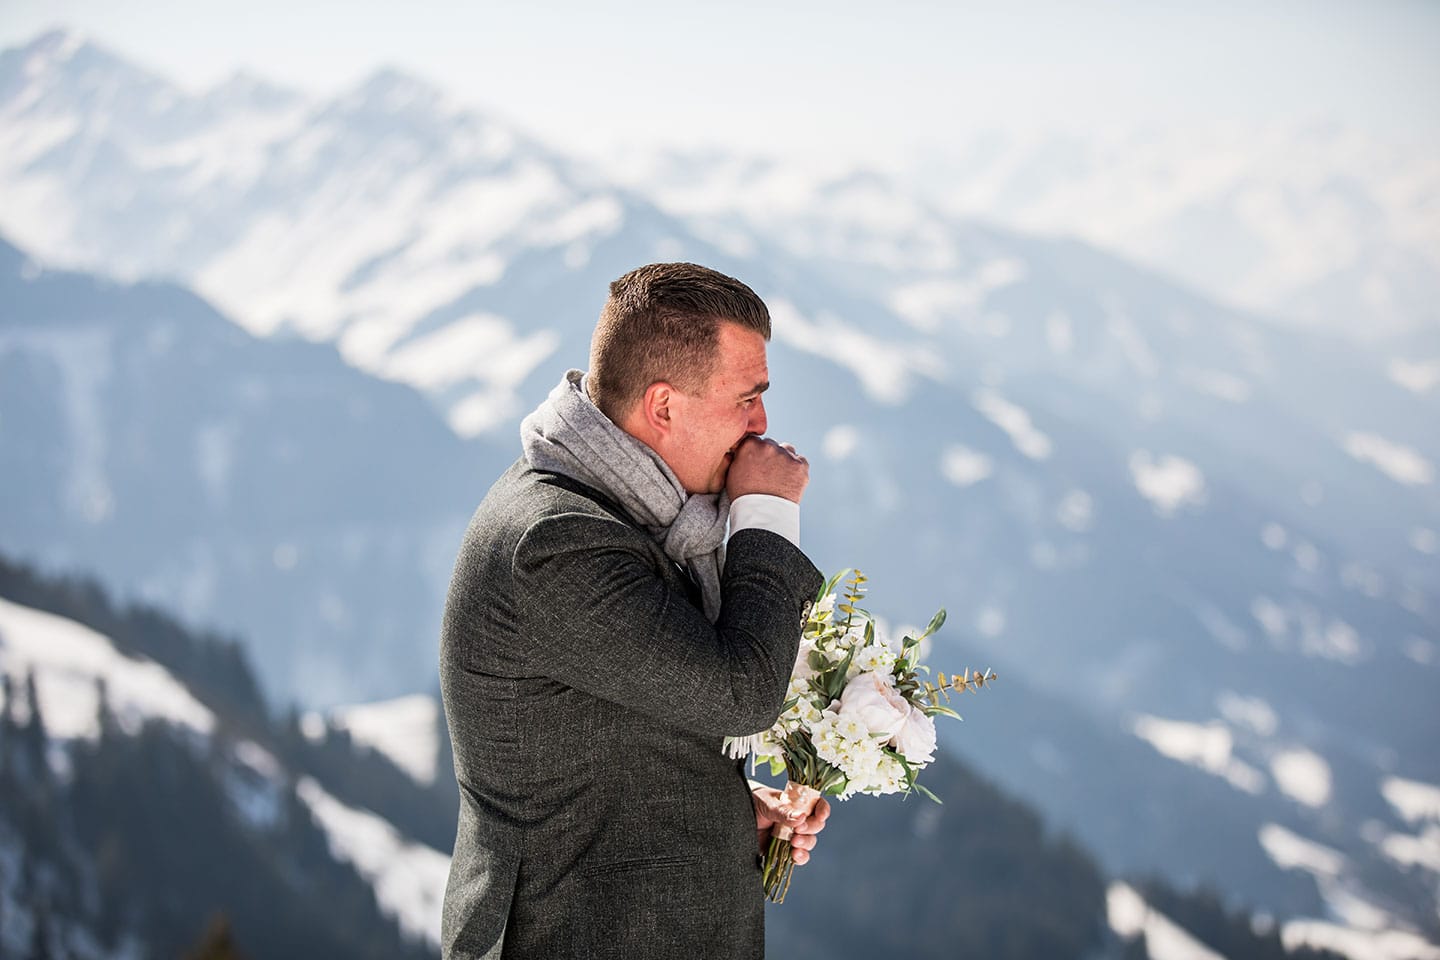 Destination wedding in Austria